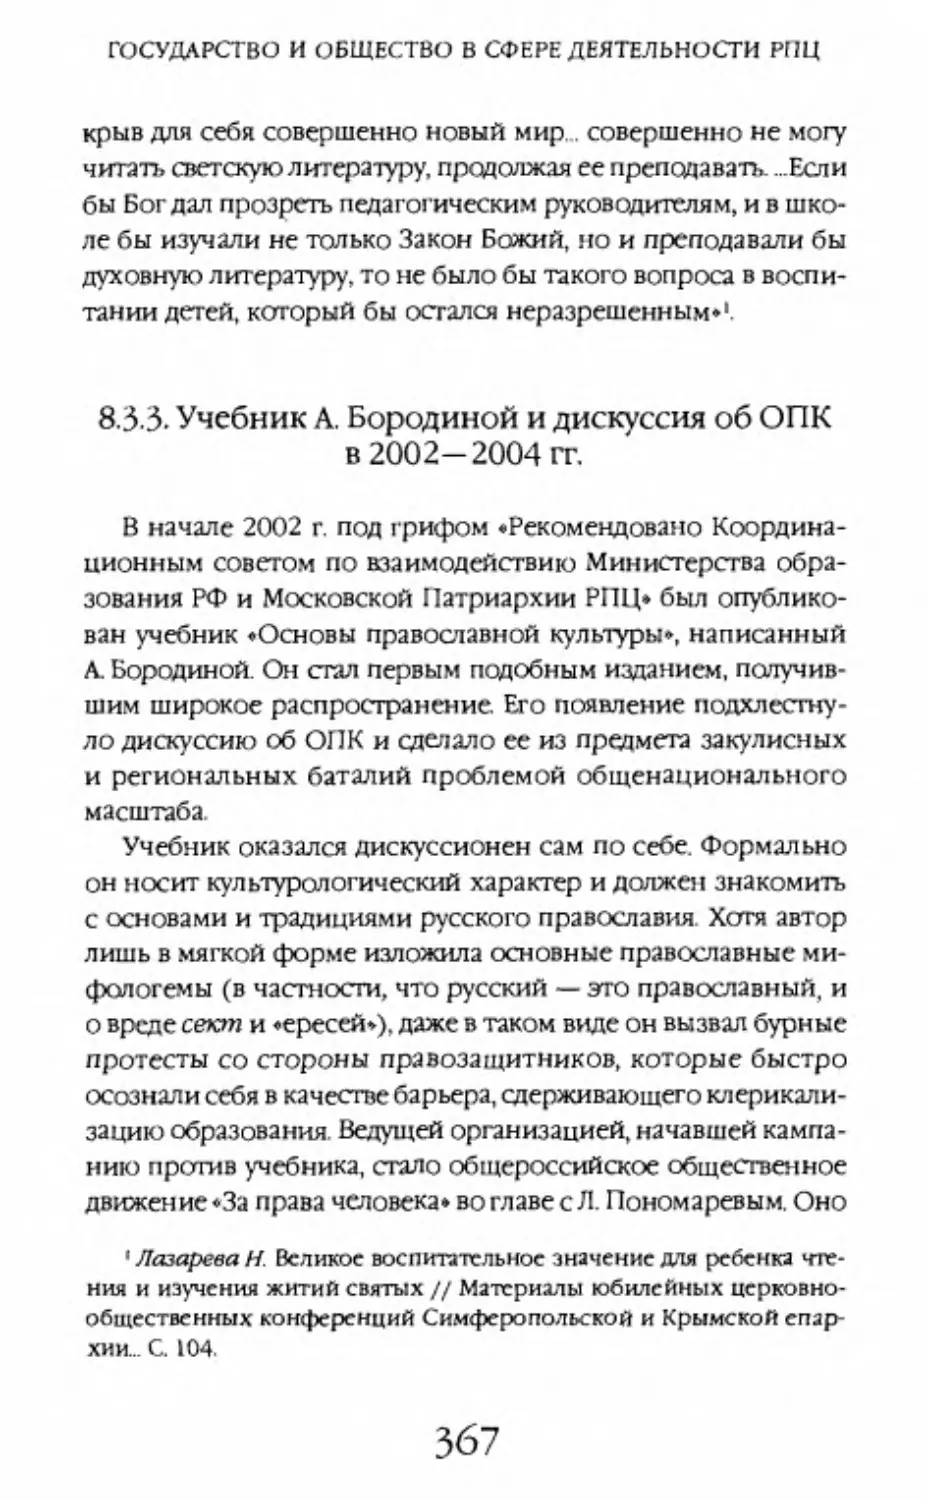 8.3.3. Учебник А. Бородиной и дискуссия об ОПК в 2002—2004 гг.